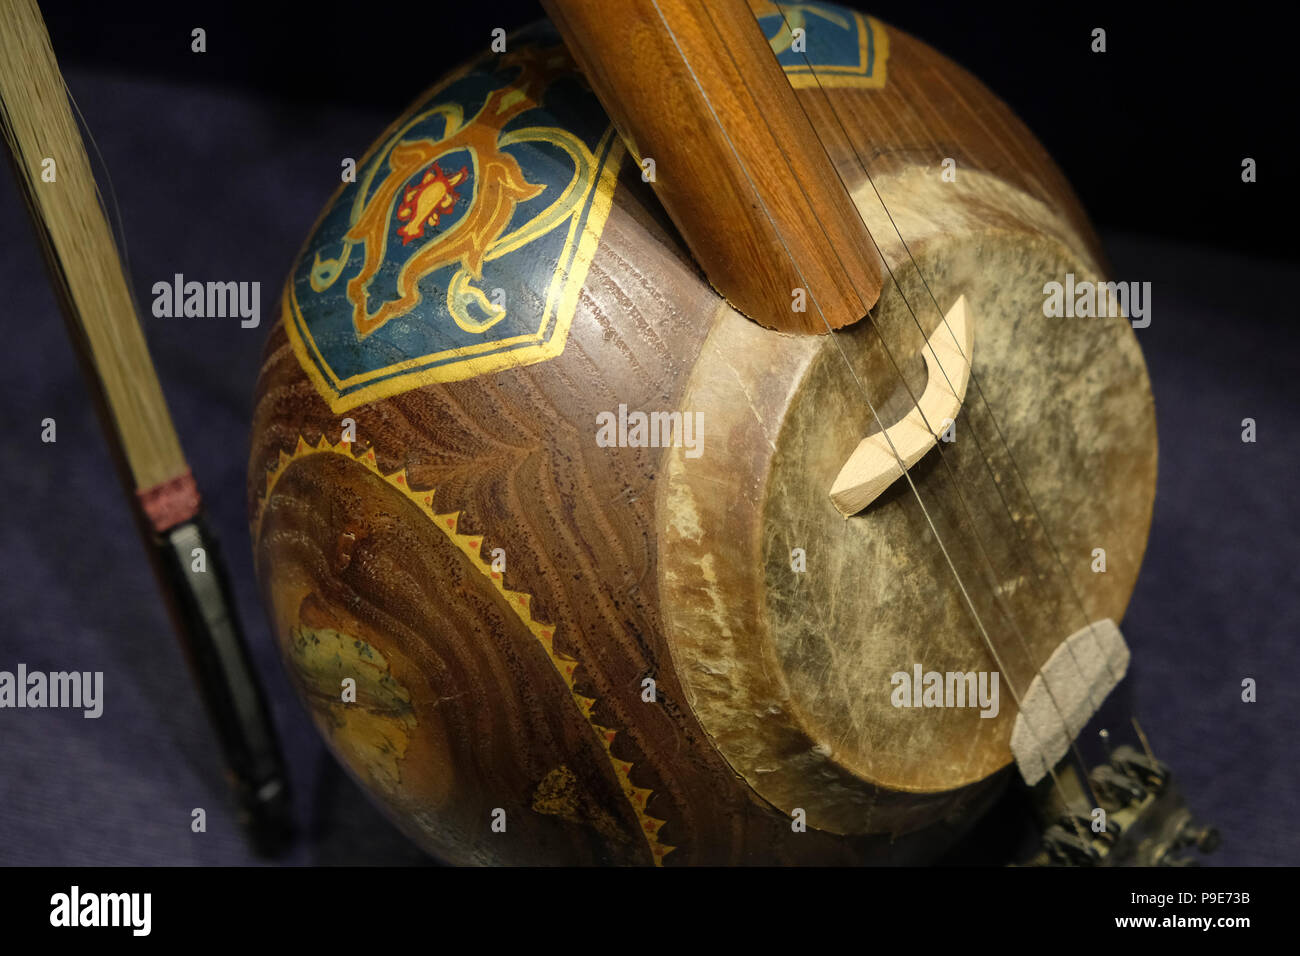 Violin family immagini e fotografie stock ad alta risoluzione - Alamy